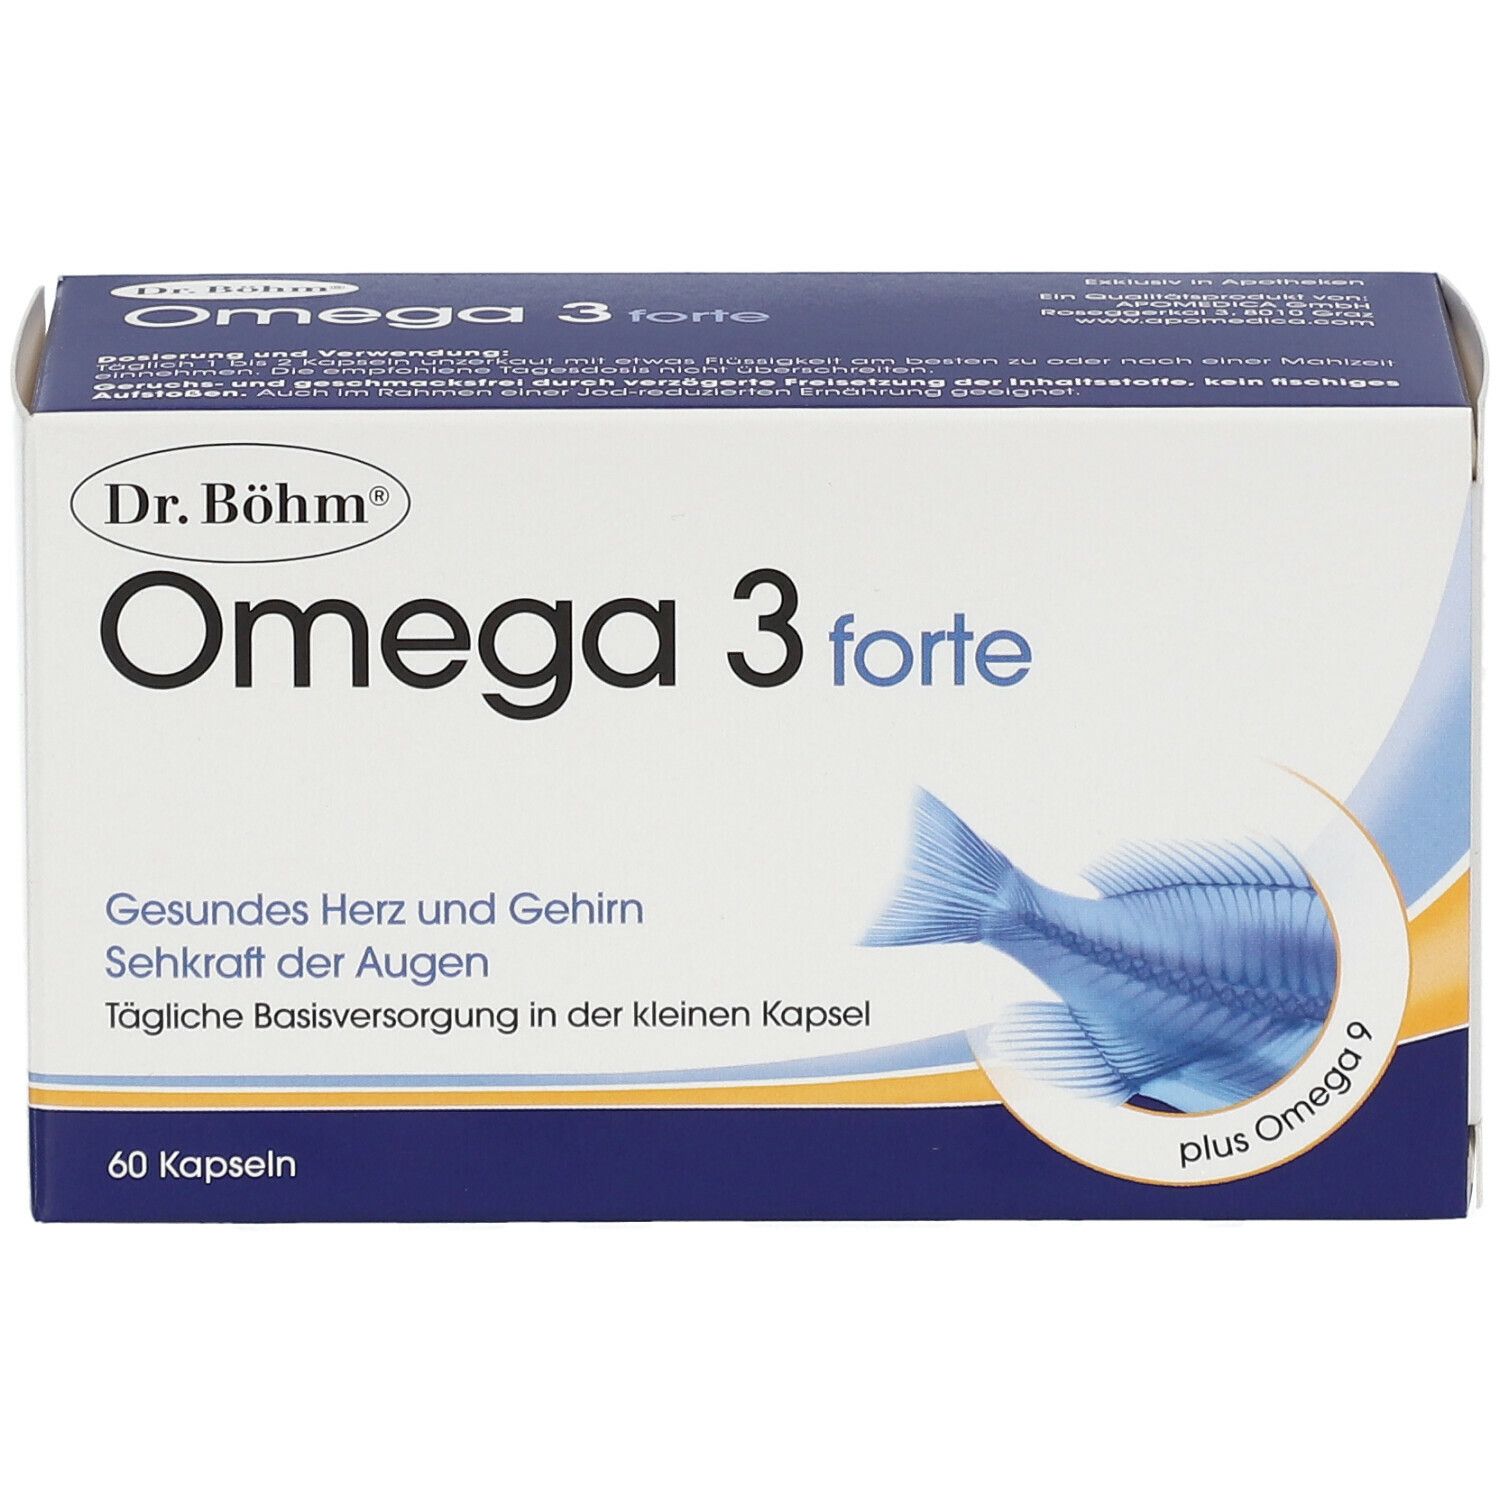 Dr. Böhm® Omega-3-forte